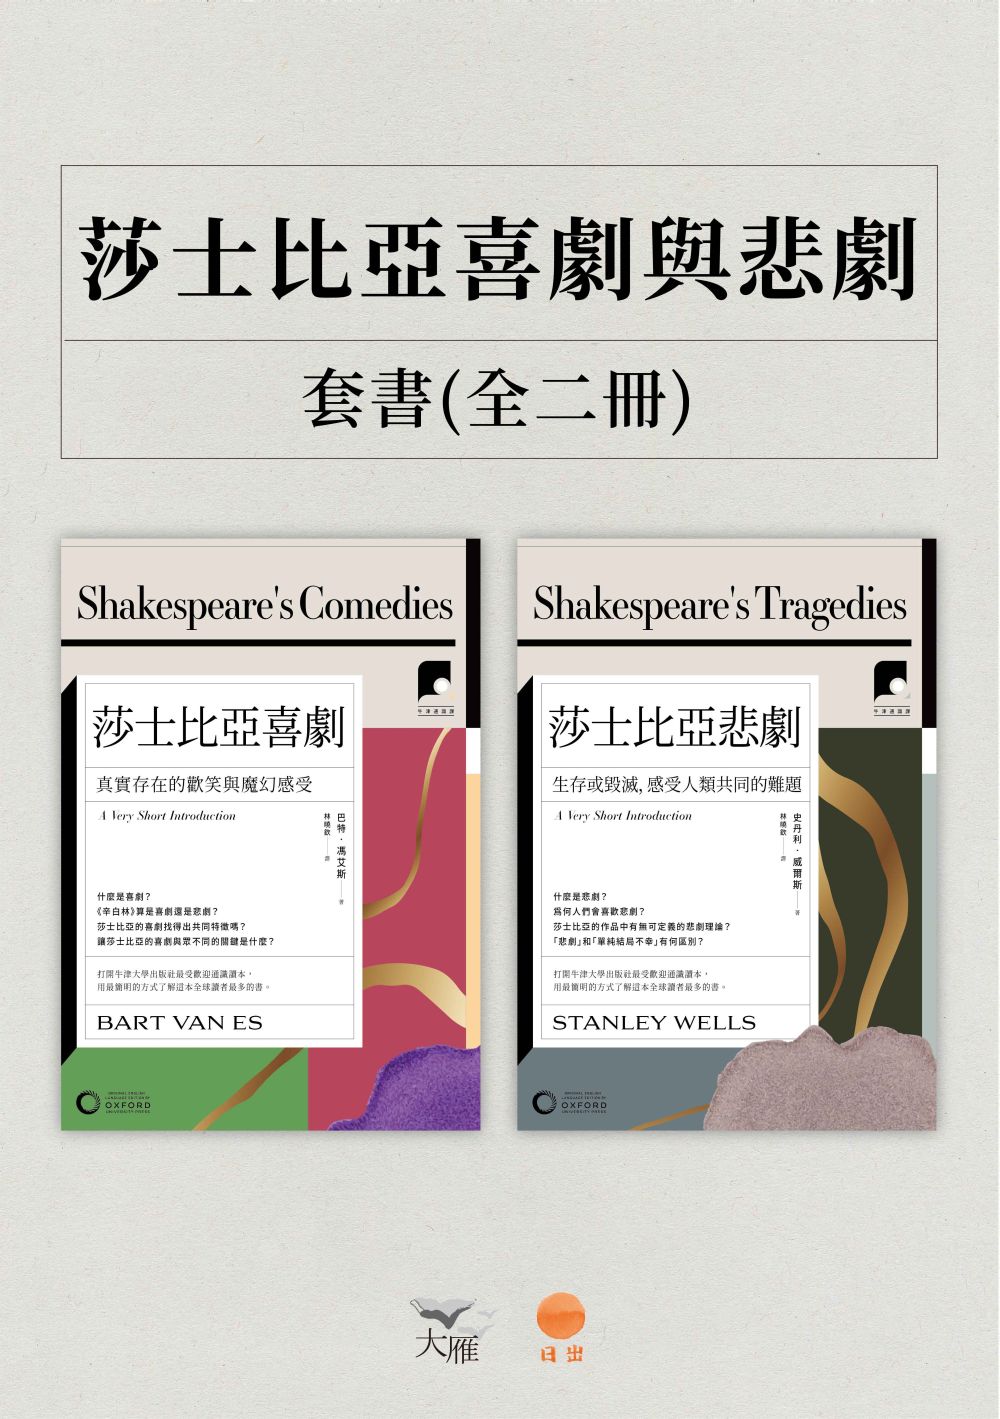 【牛津通識課.莎士比亞喜劇與悲劇套書】(二冊)：《莎士比亞喜劇》、《莎士比亞悲劇》 (電子書)